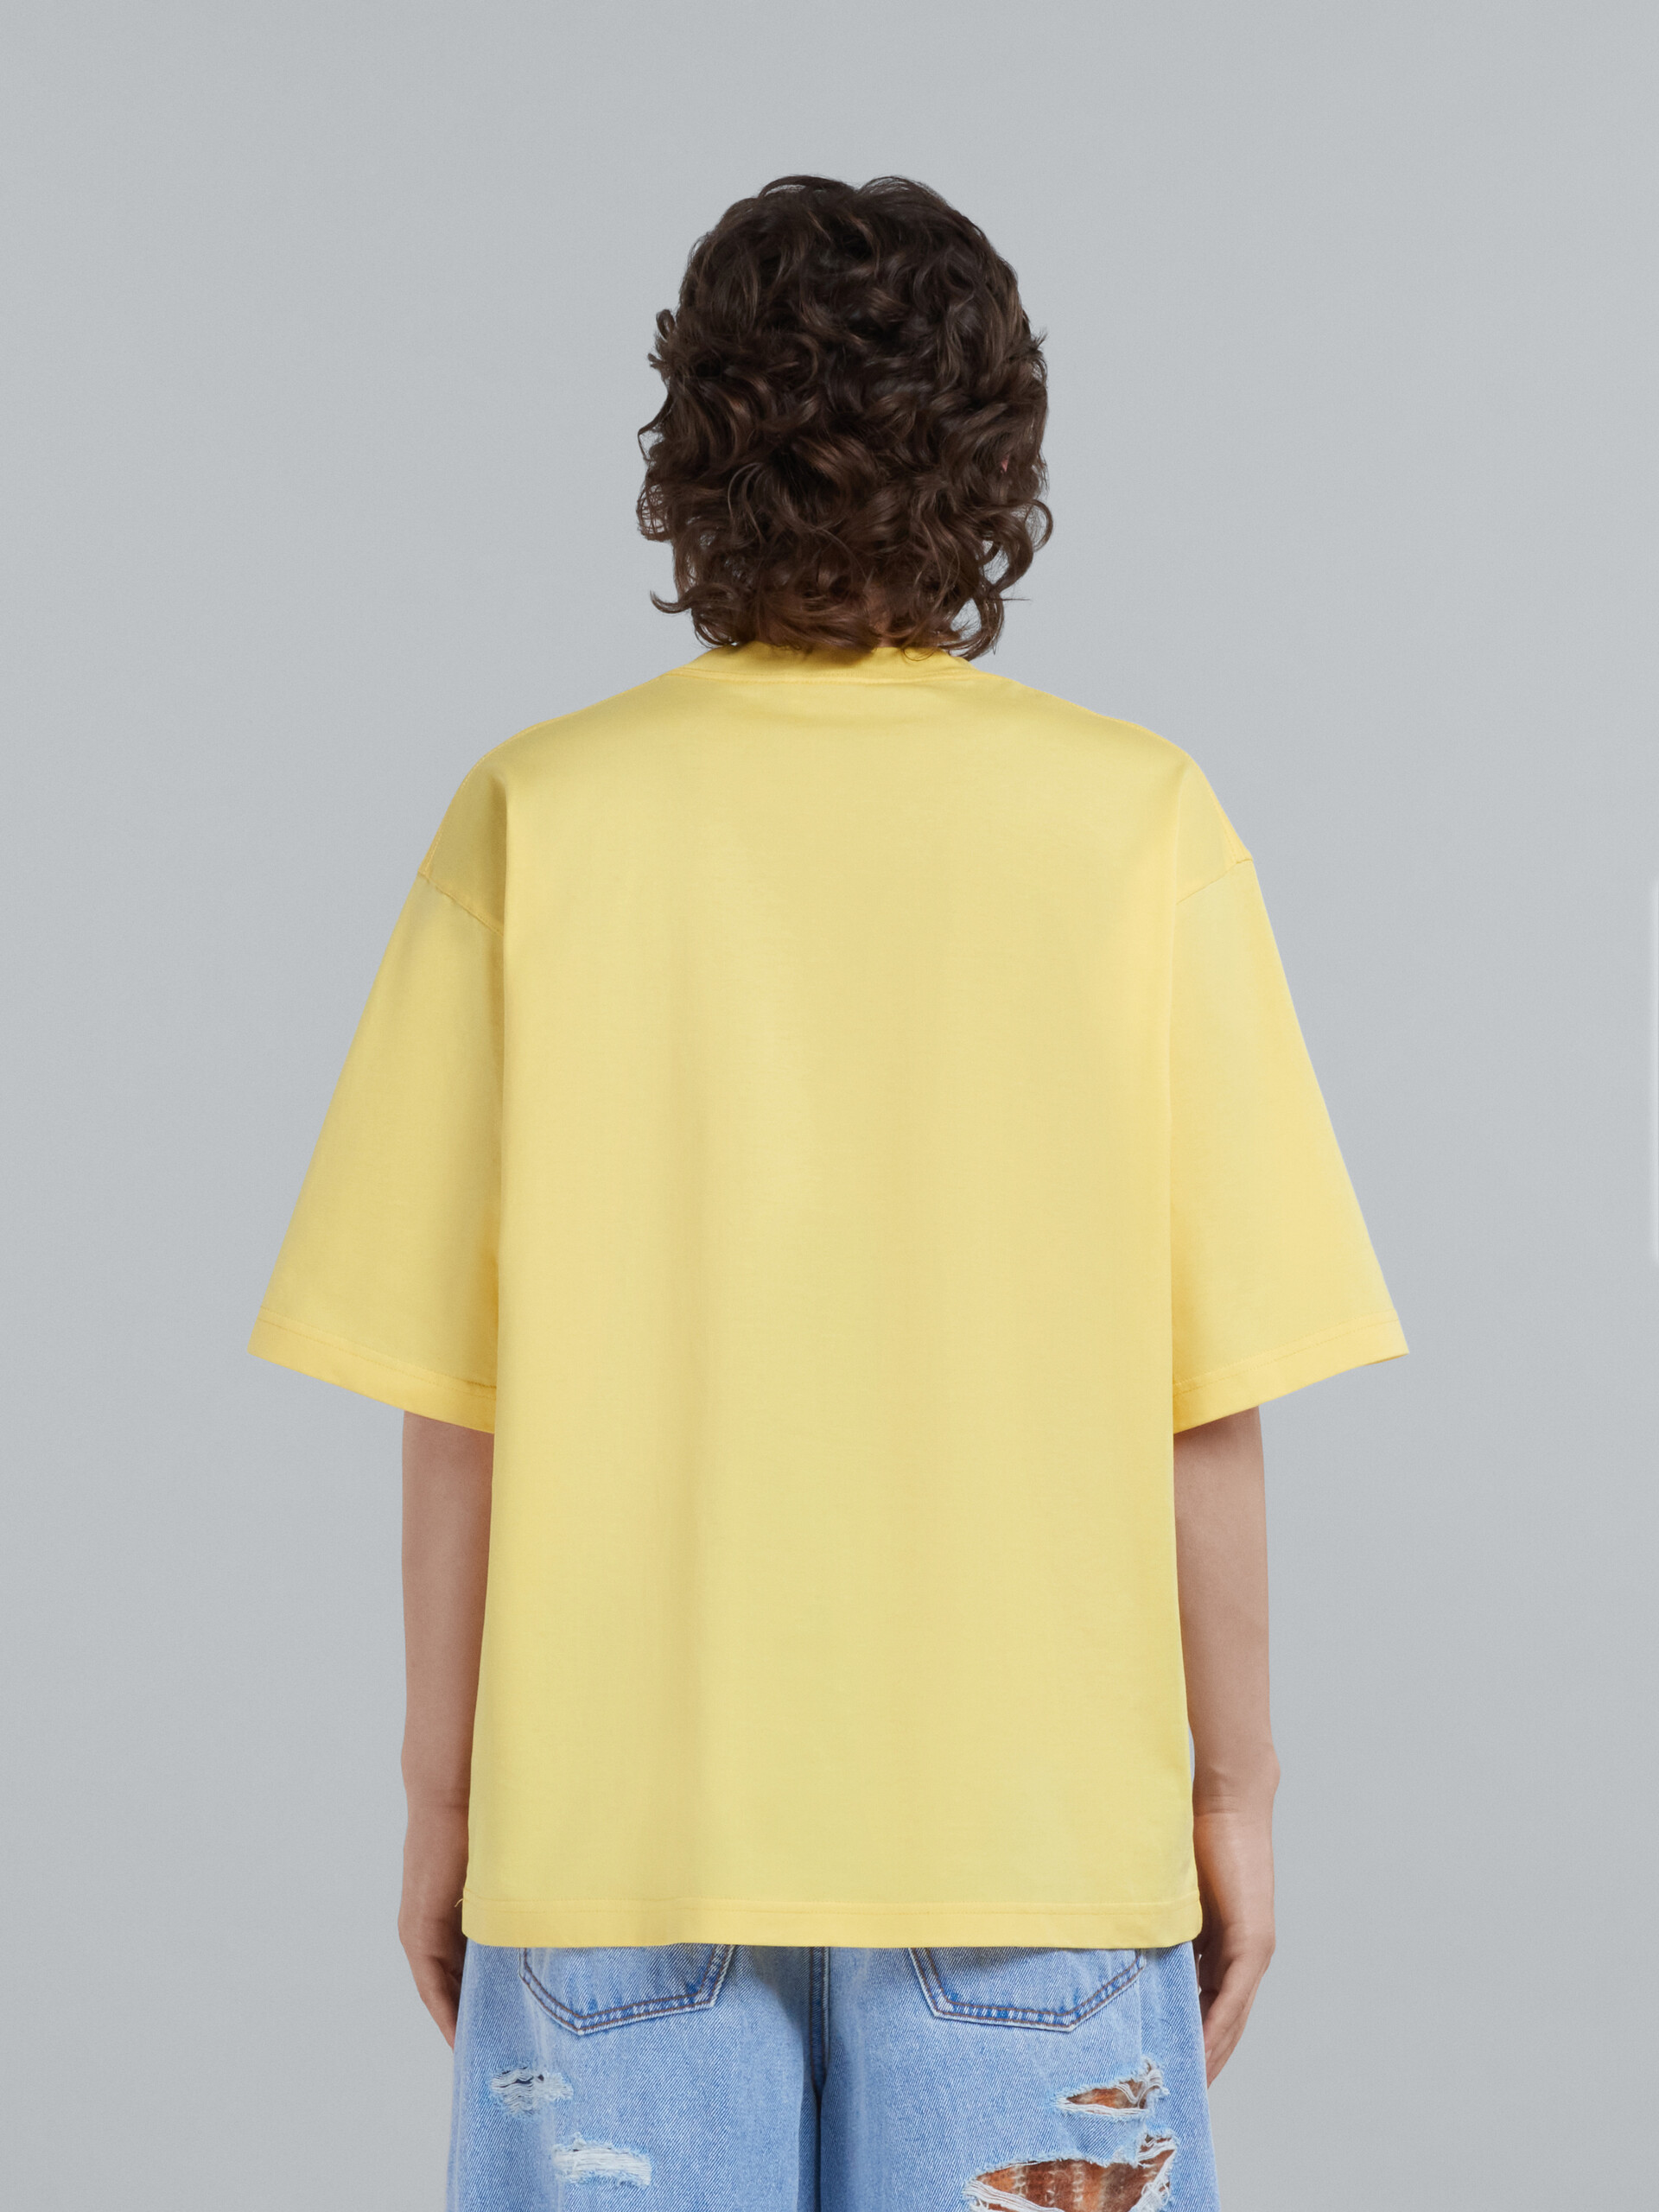 T-shirt en coton biologique jaune avec logo - T-shirts - Image 3